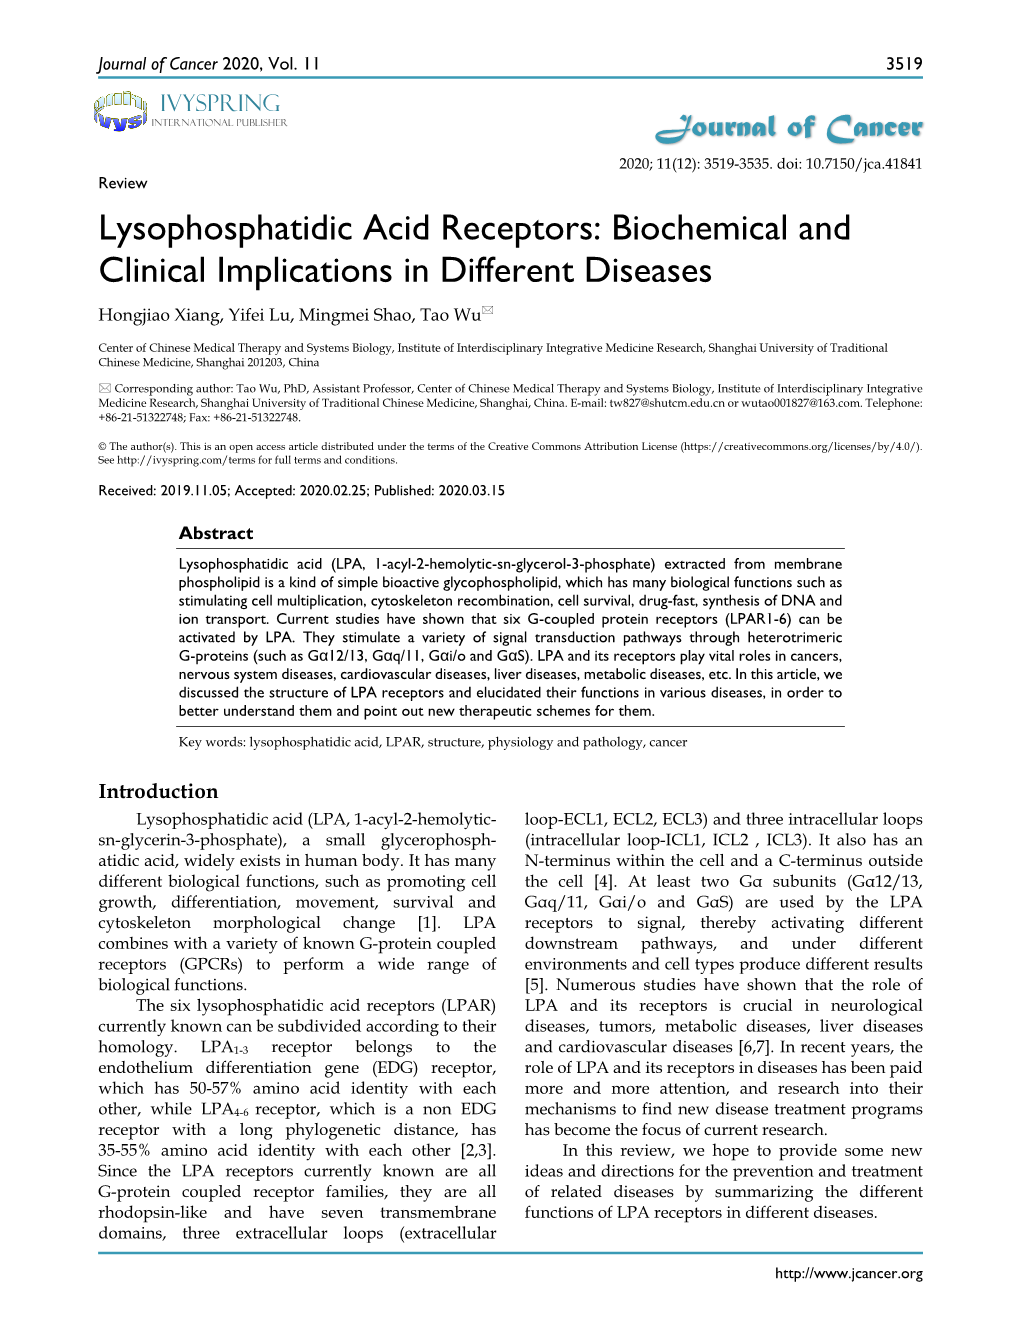 Lysophosphatidic Acid Receptors: Biochemical and Clinical Implications in Different Diseases Hongjiao Xiang, Yifei Lu, Mingmei Shao, Tao Wu